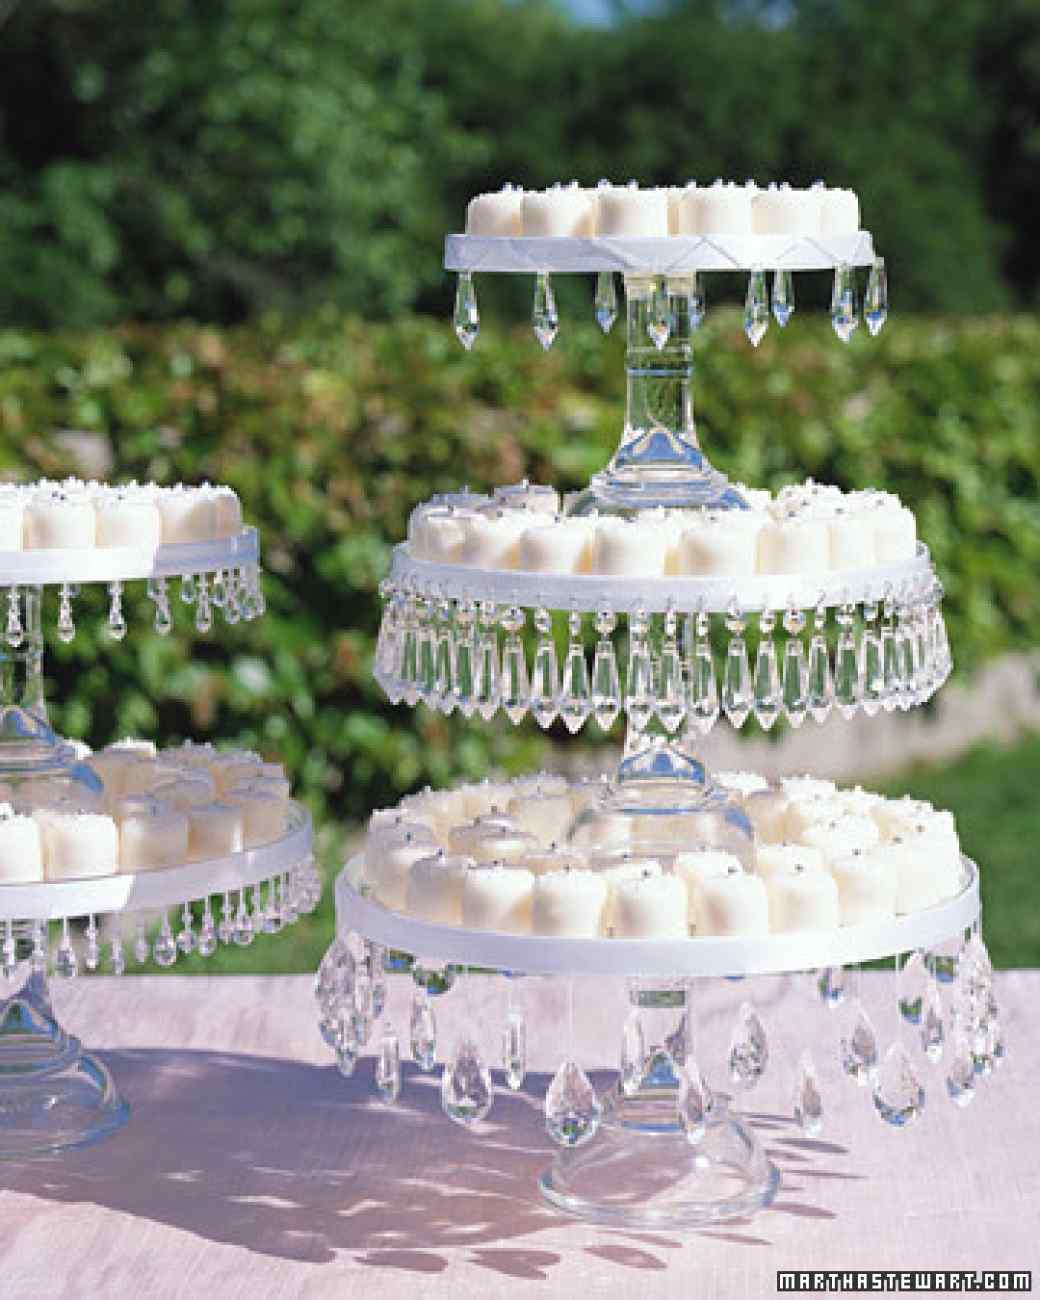 Jeweled Cake Stands